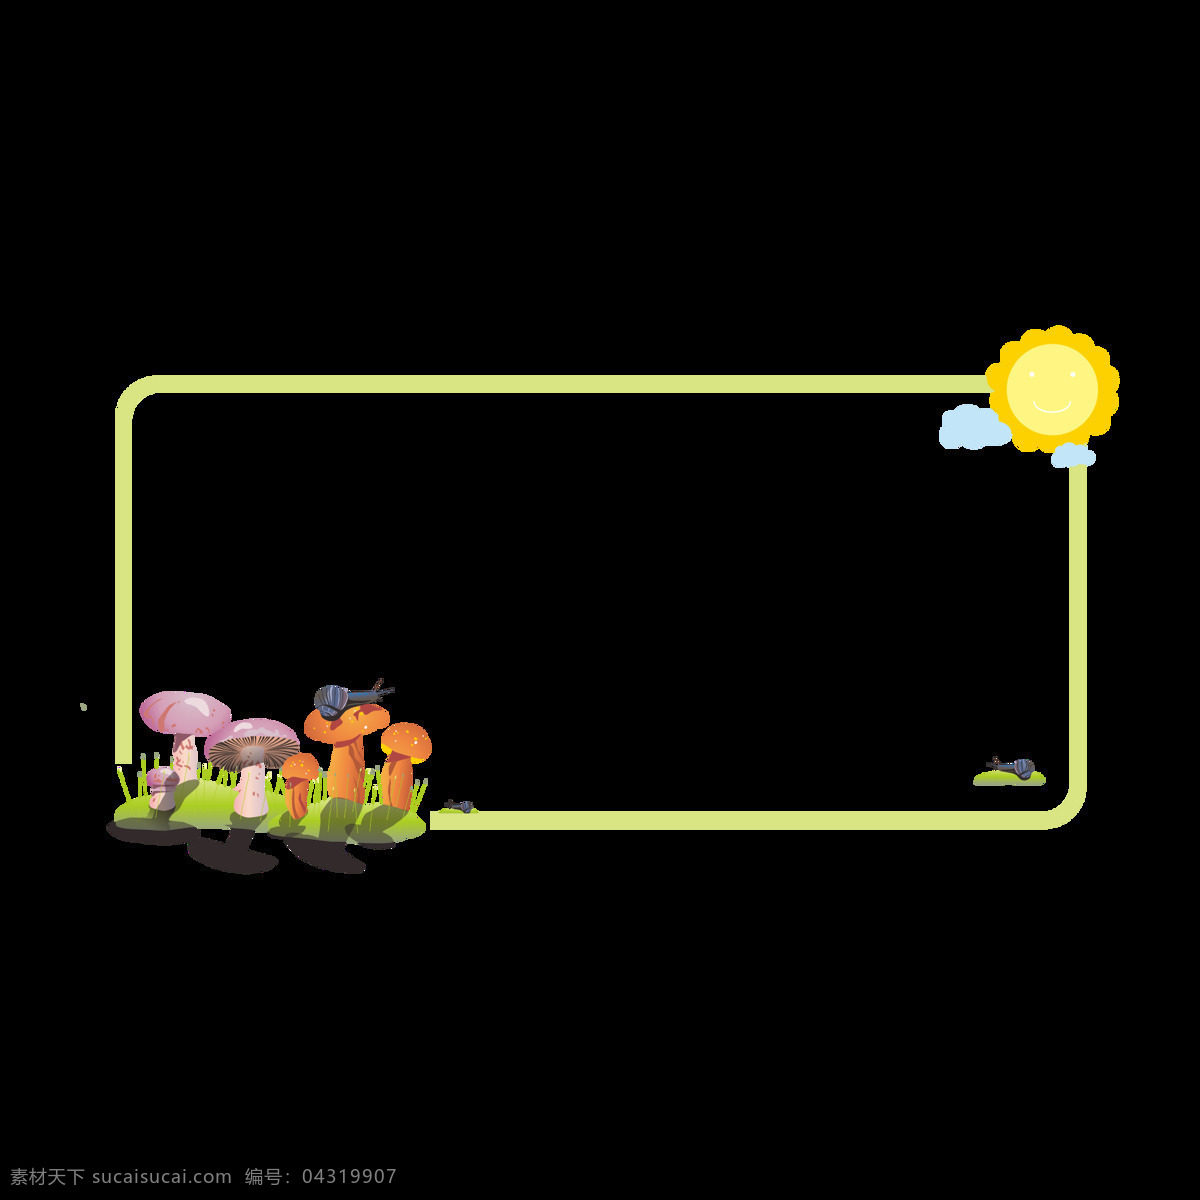 卡通 可爱 植物 边框 元素 商用 植物边框 卡通可爱